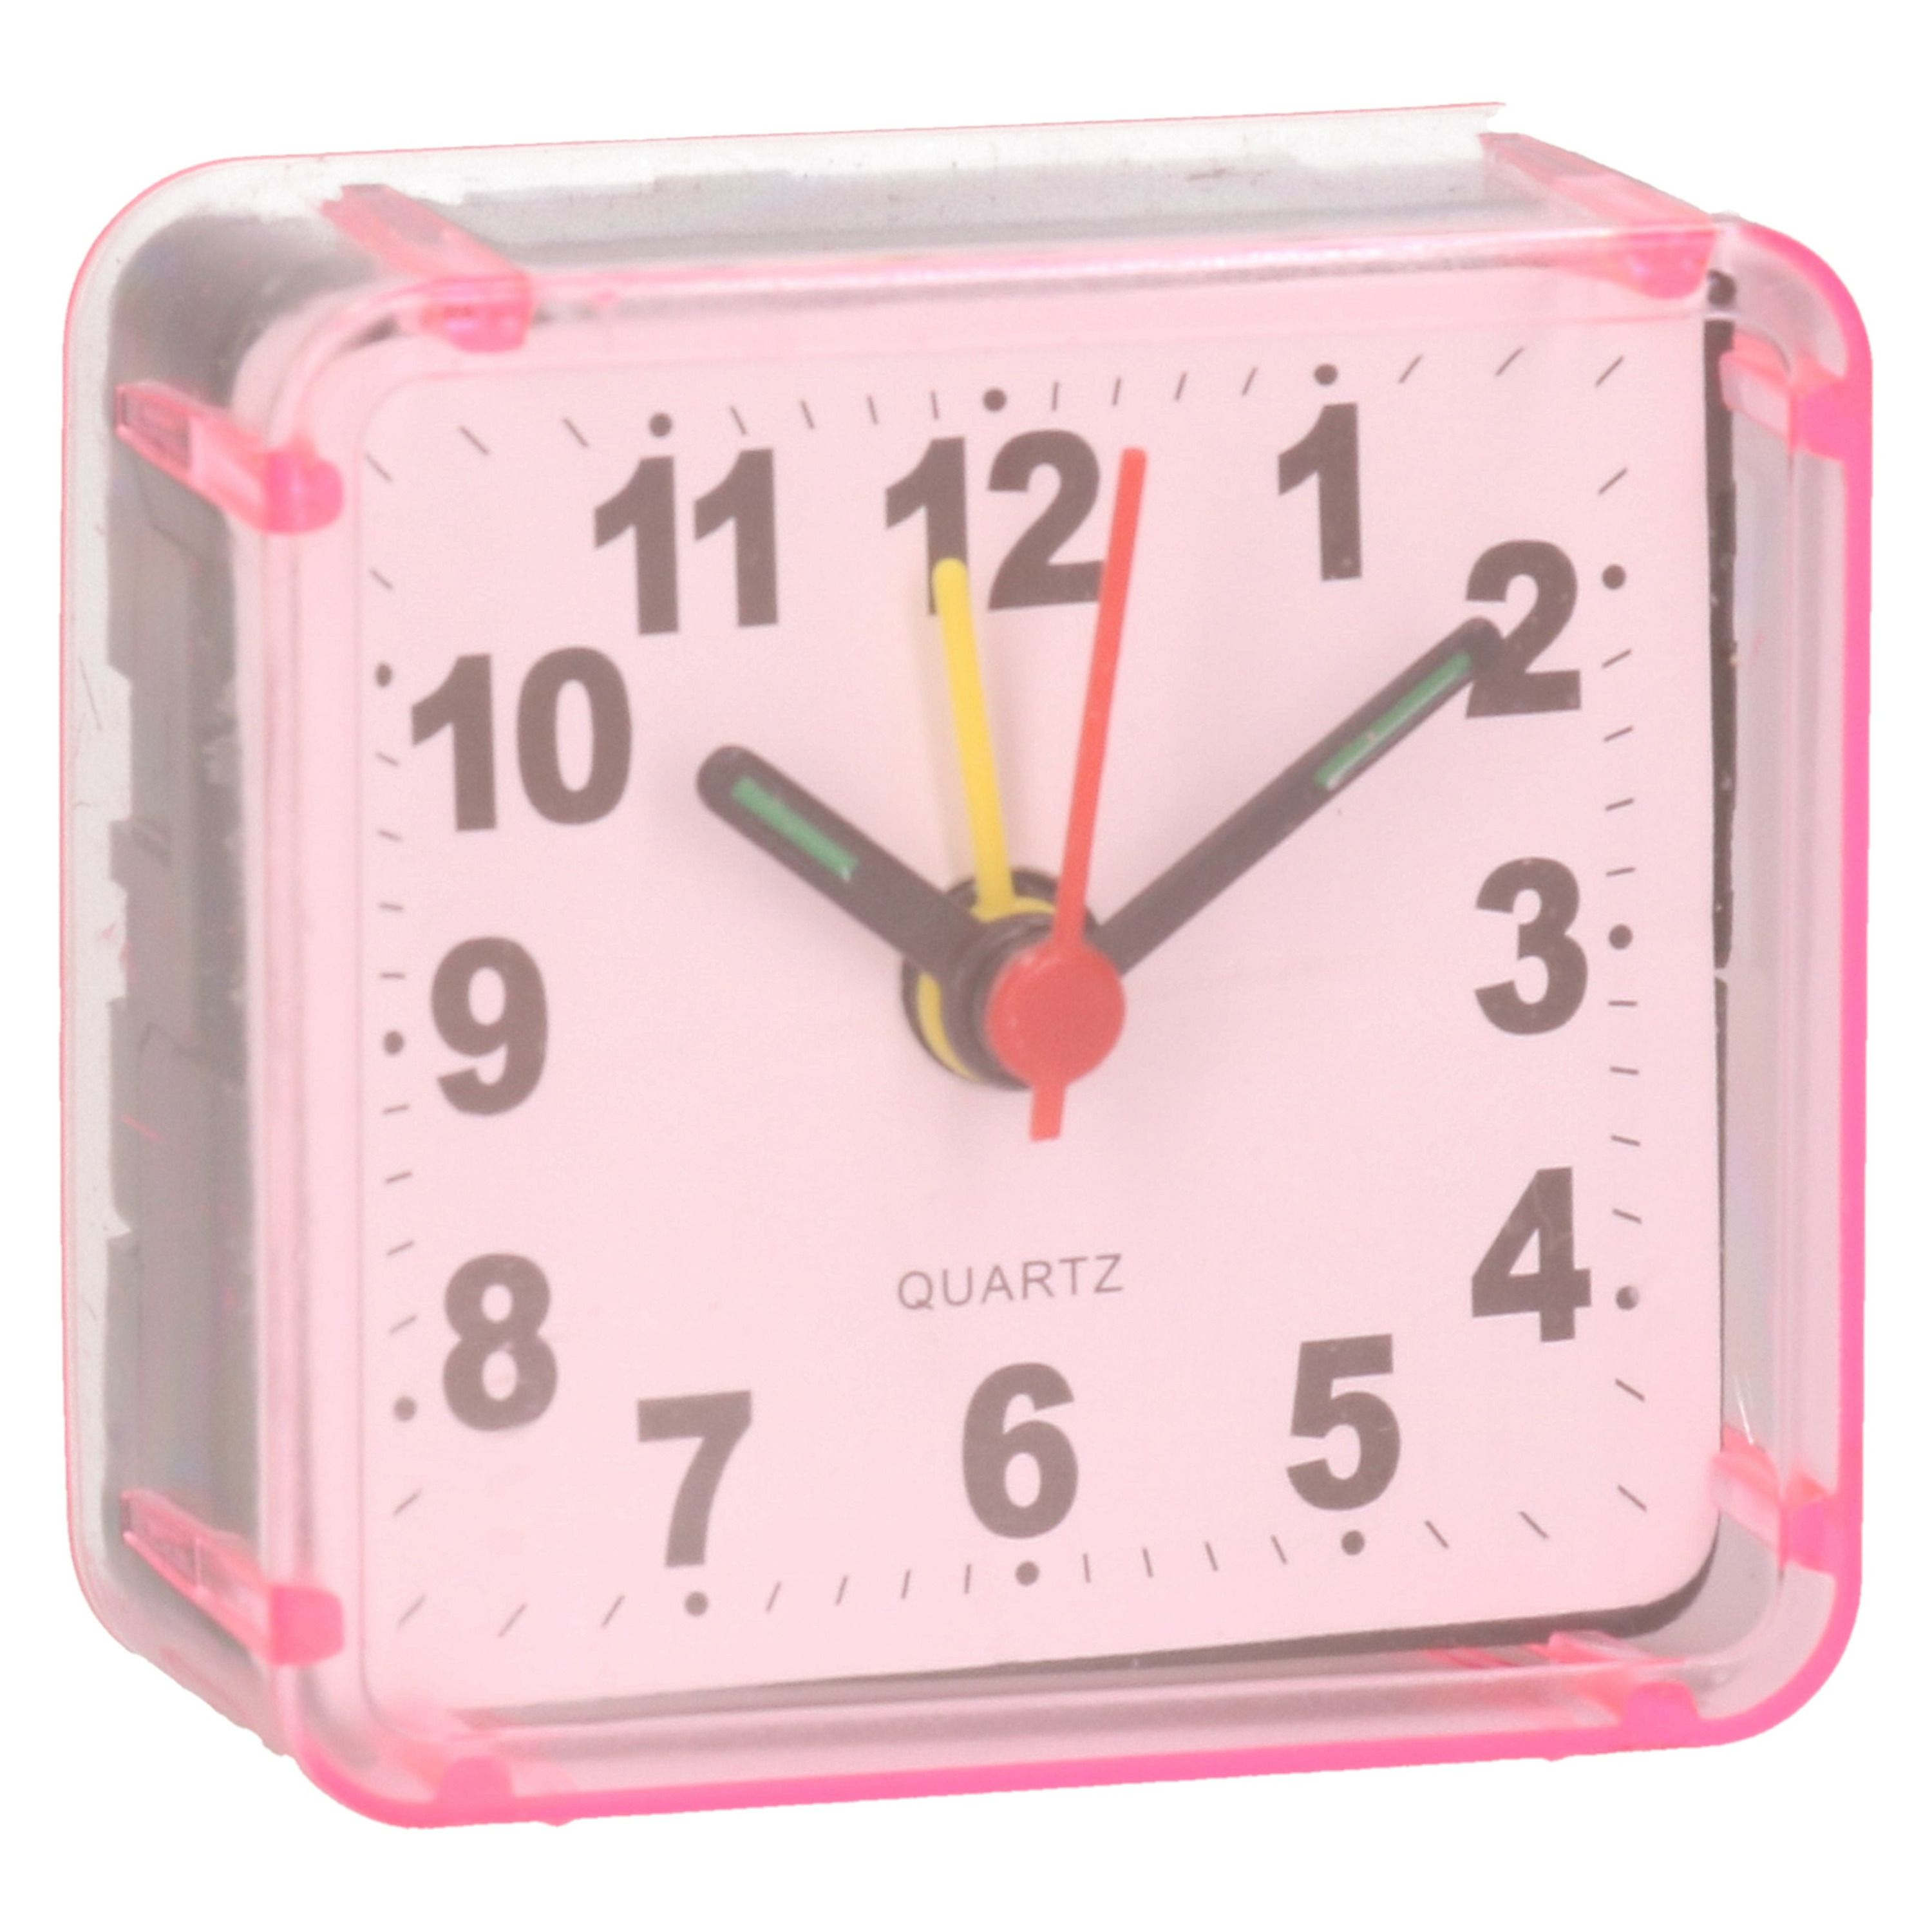 Gerimport Reiswekker-alarmklok analoog roze kunststof 6 x 3 cm klein model